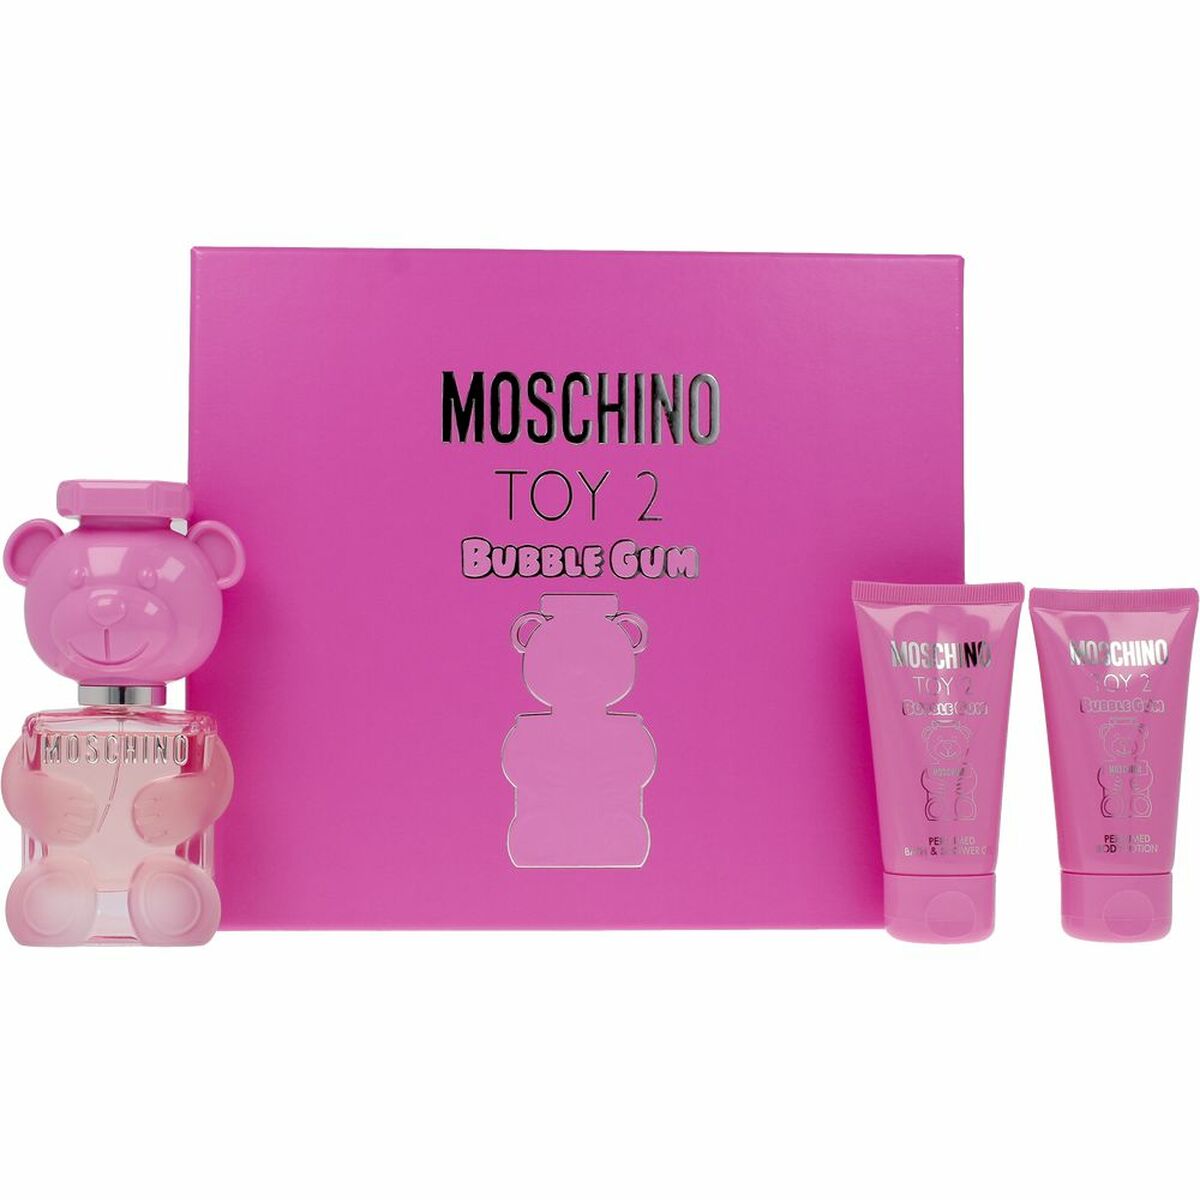 Set de Parfum Femme Moschino Toy 2 Bubble Gum 3 Pièces